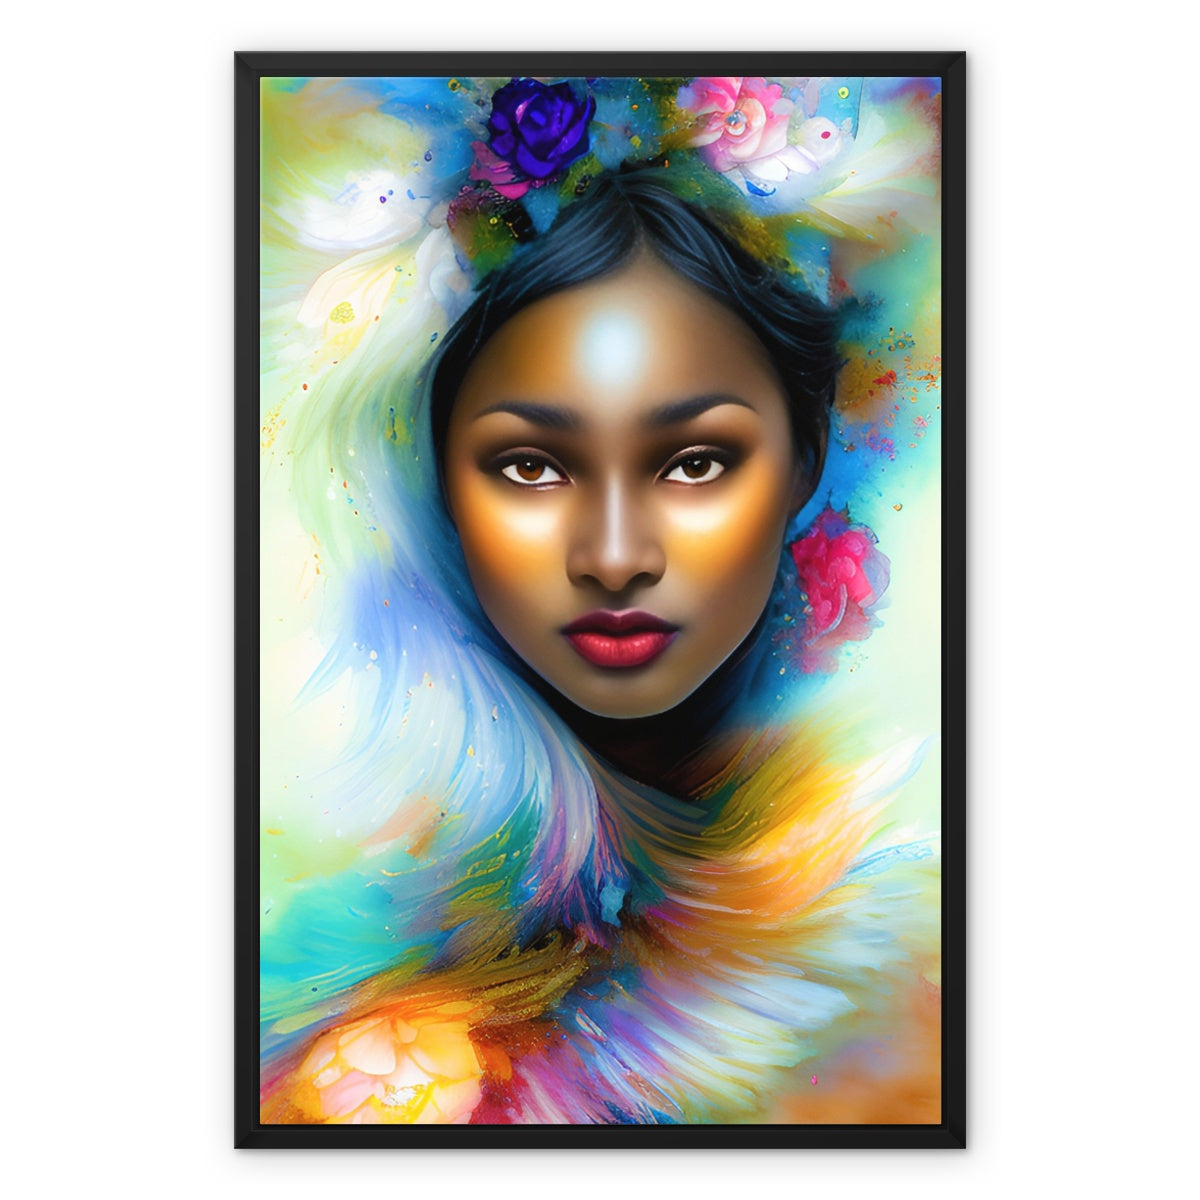 Goddess Surreal Framed Canvas